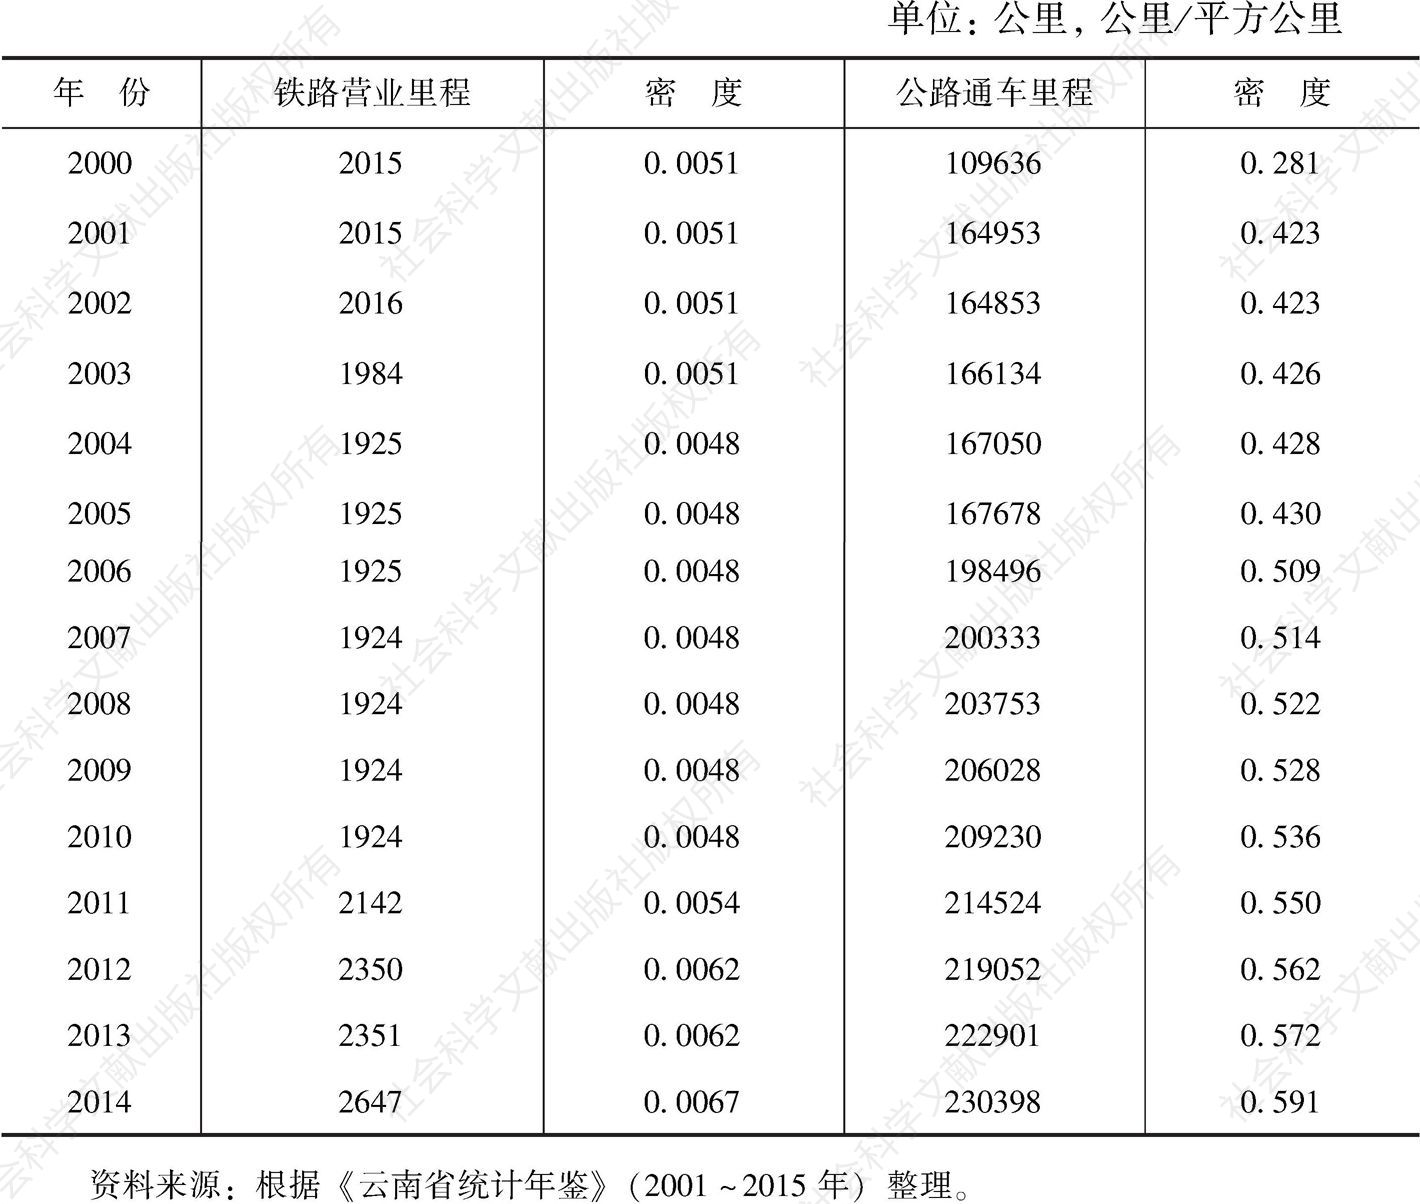 表2-5 云南省铁路及公路通车里程数